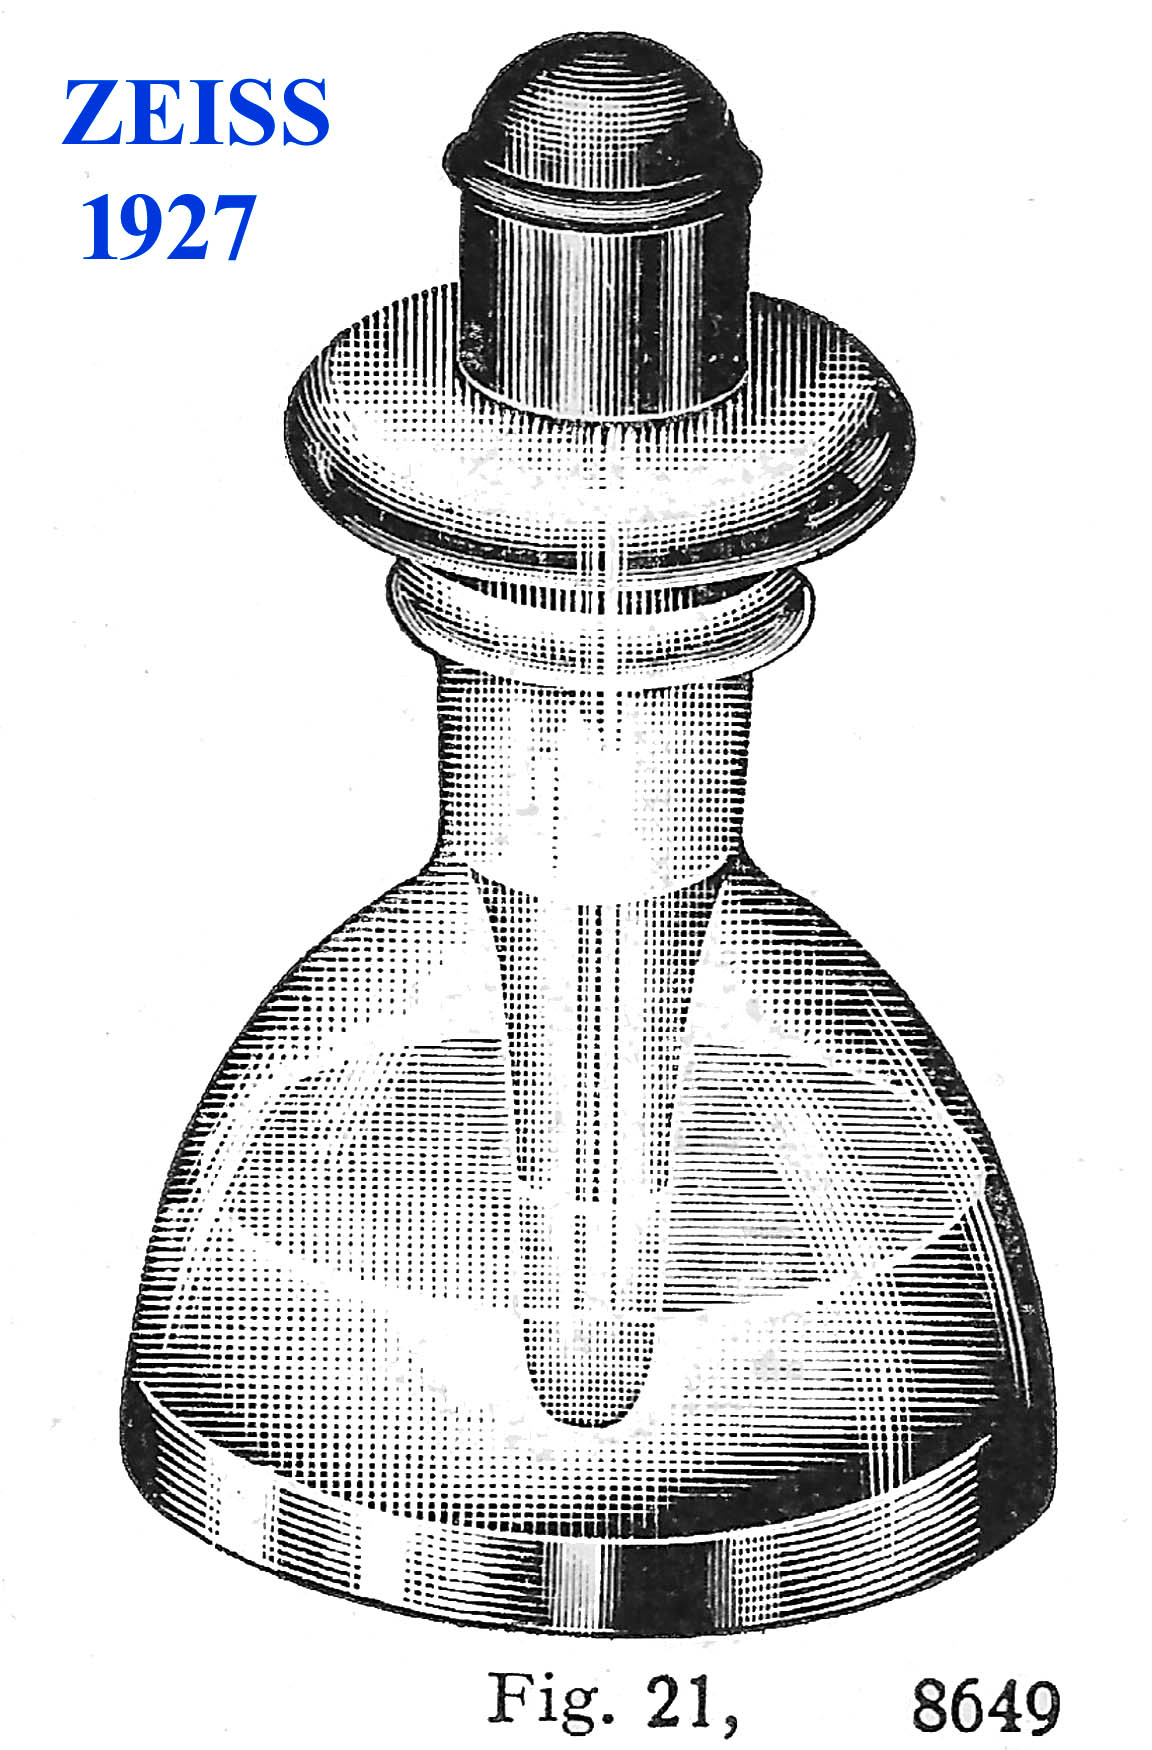 Zeiss bottle 1927